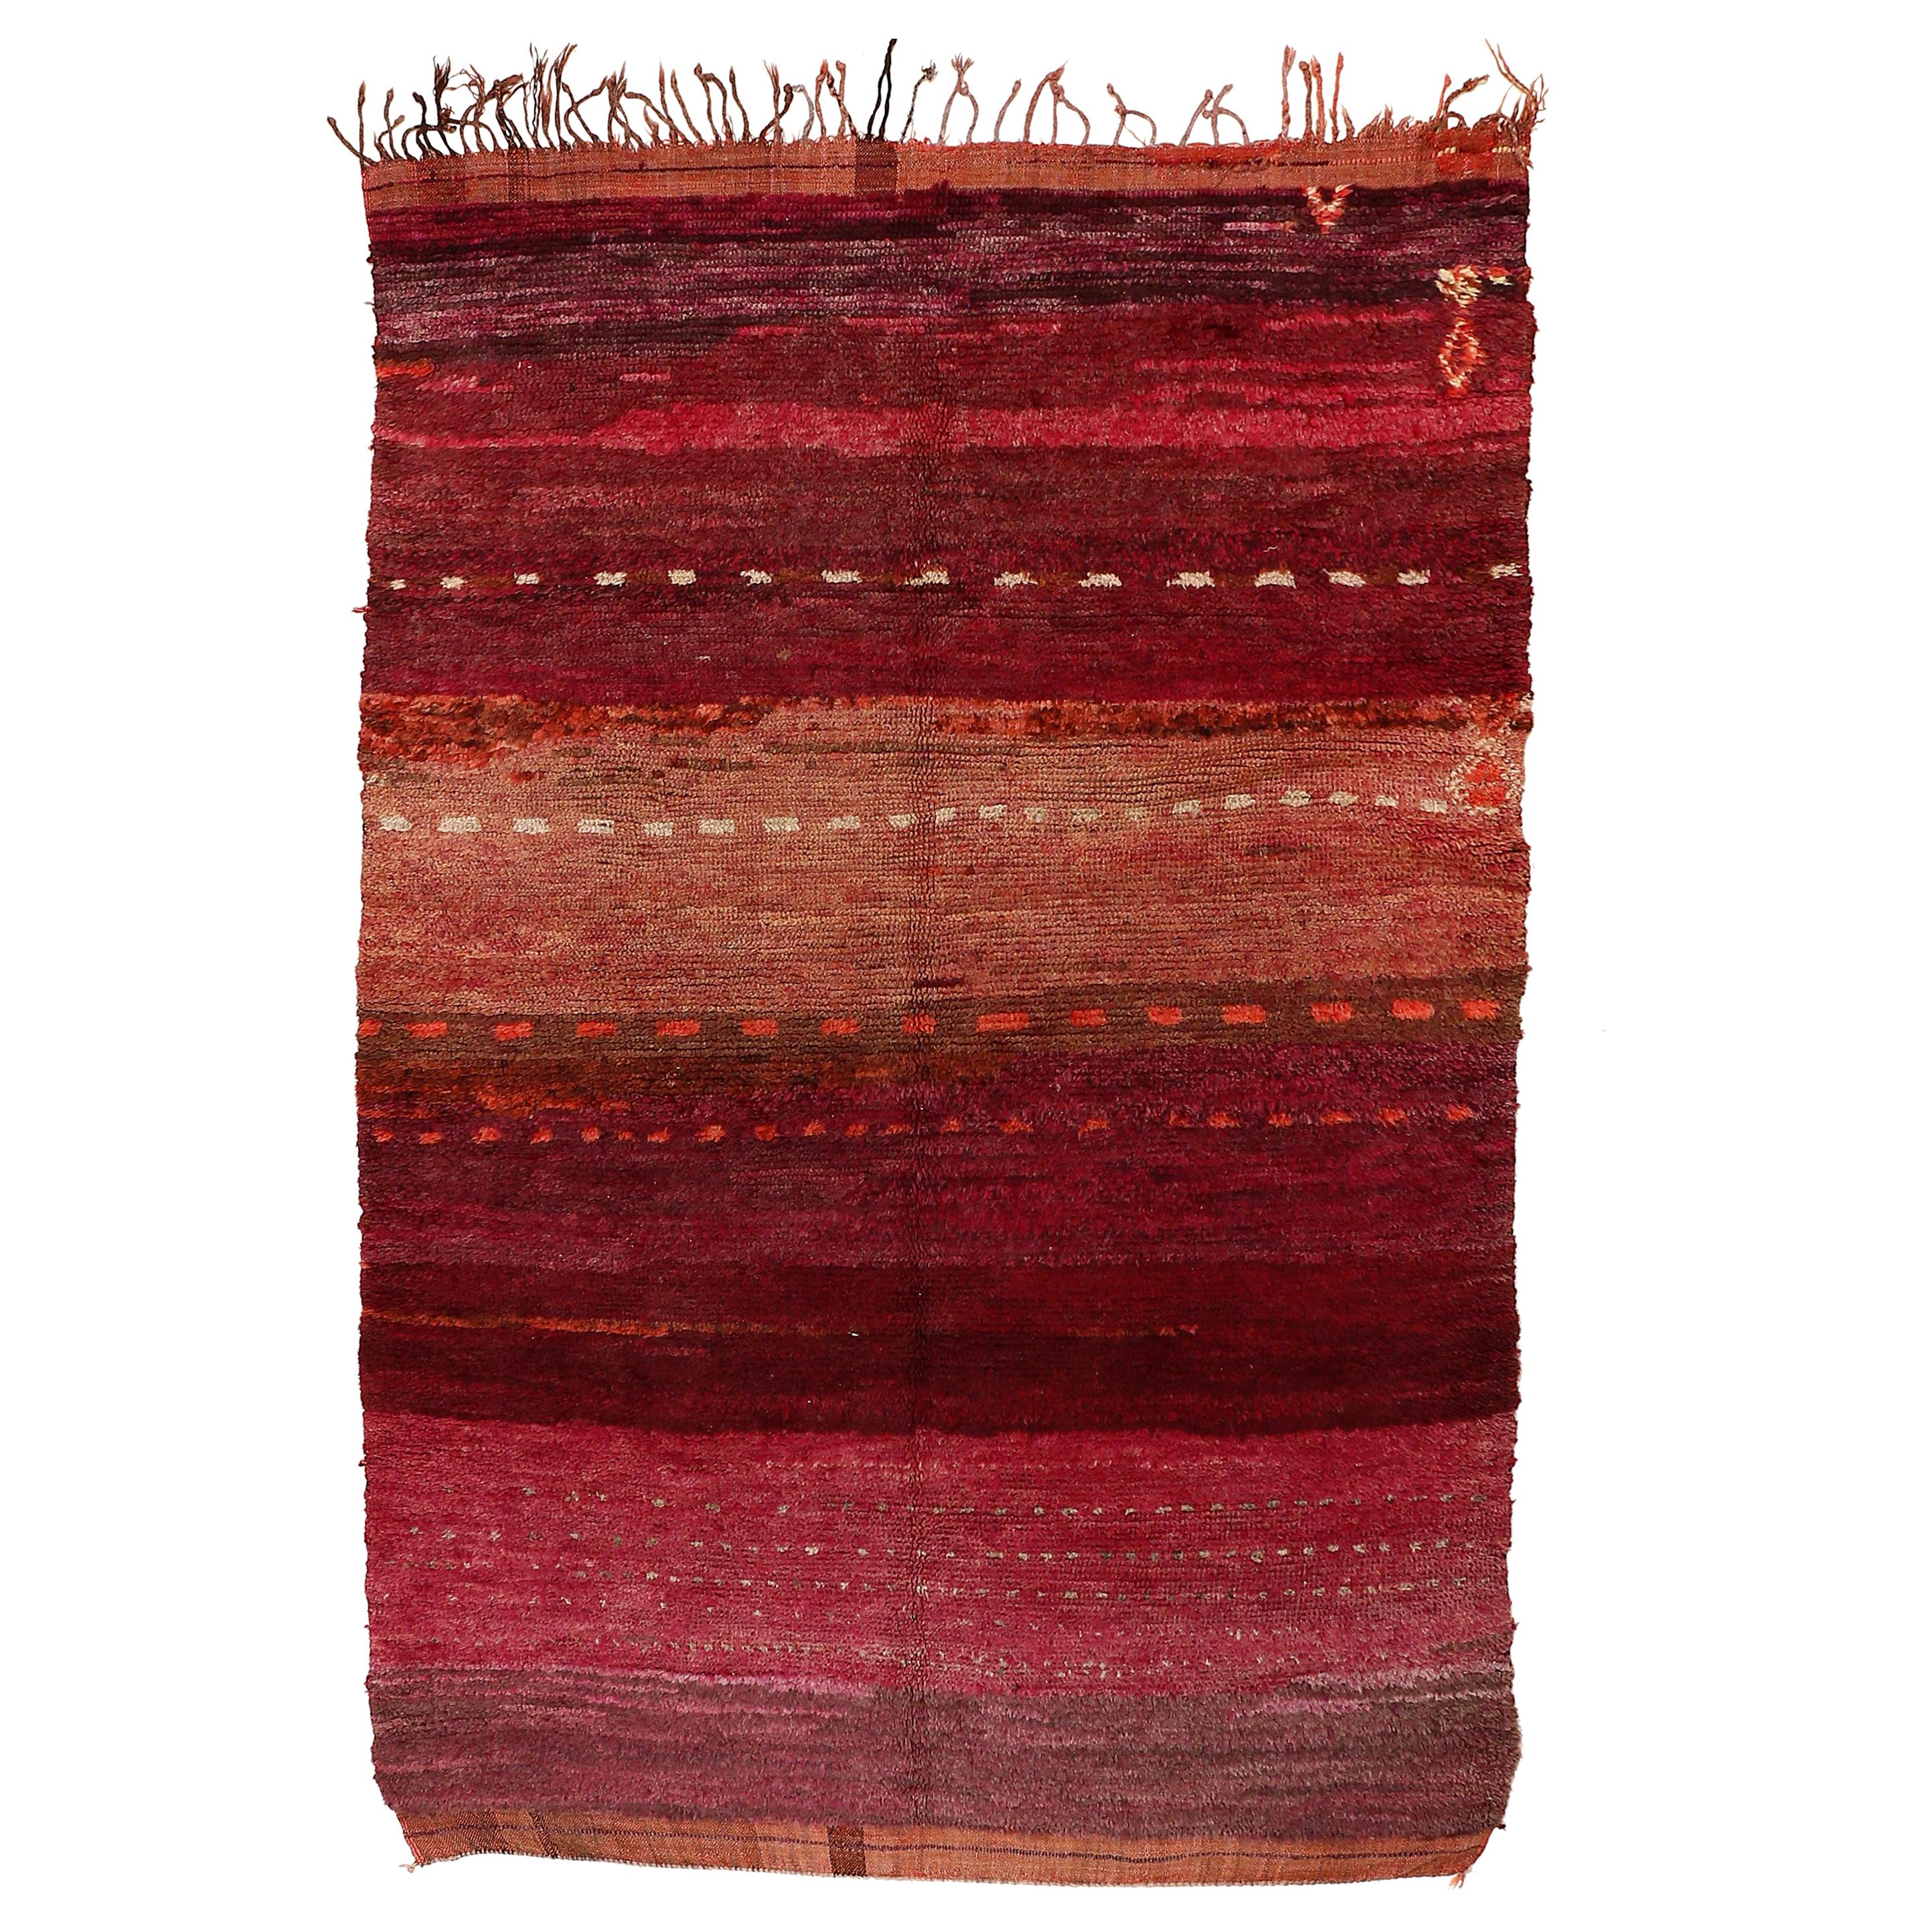 Superlative Vintage Beni Mguild Berber Carpet For Sale